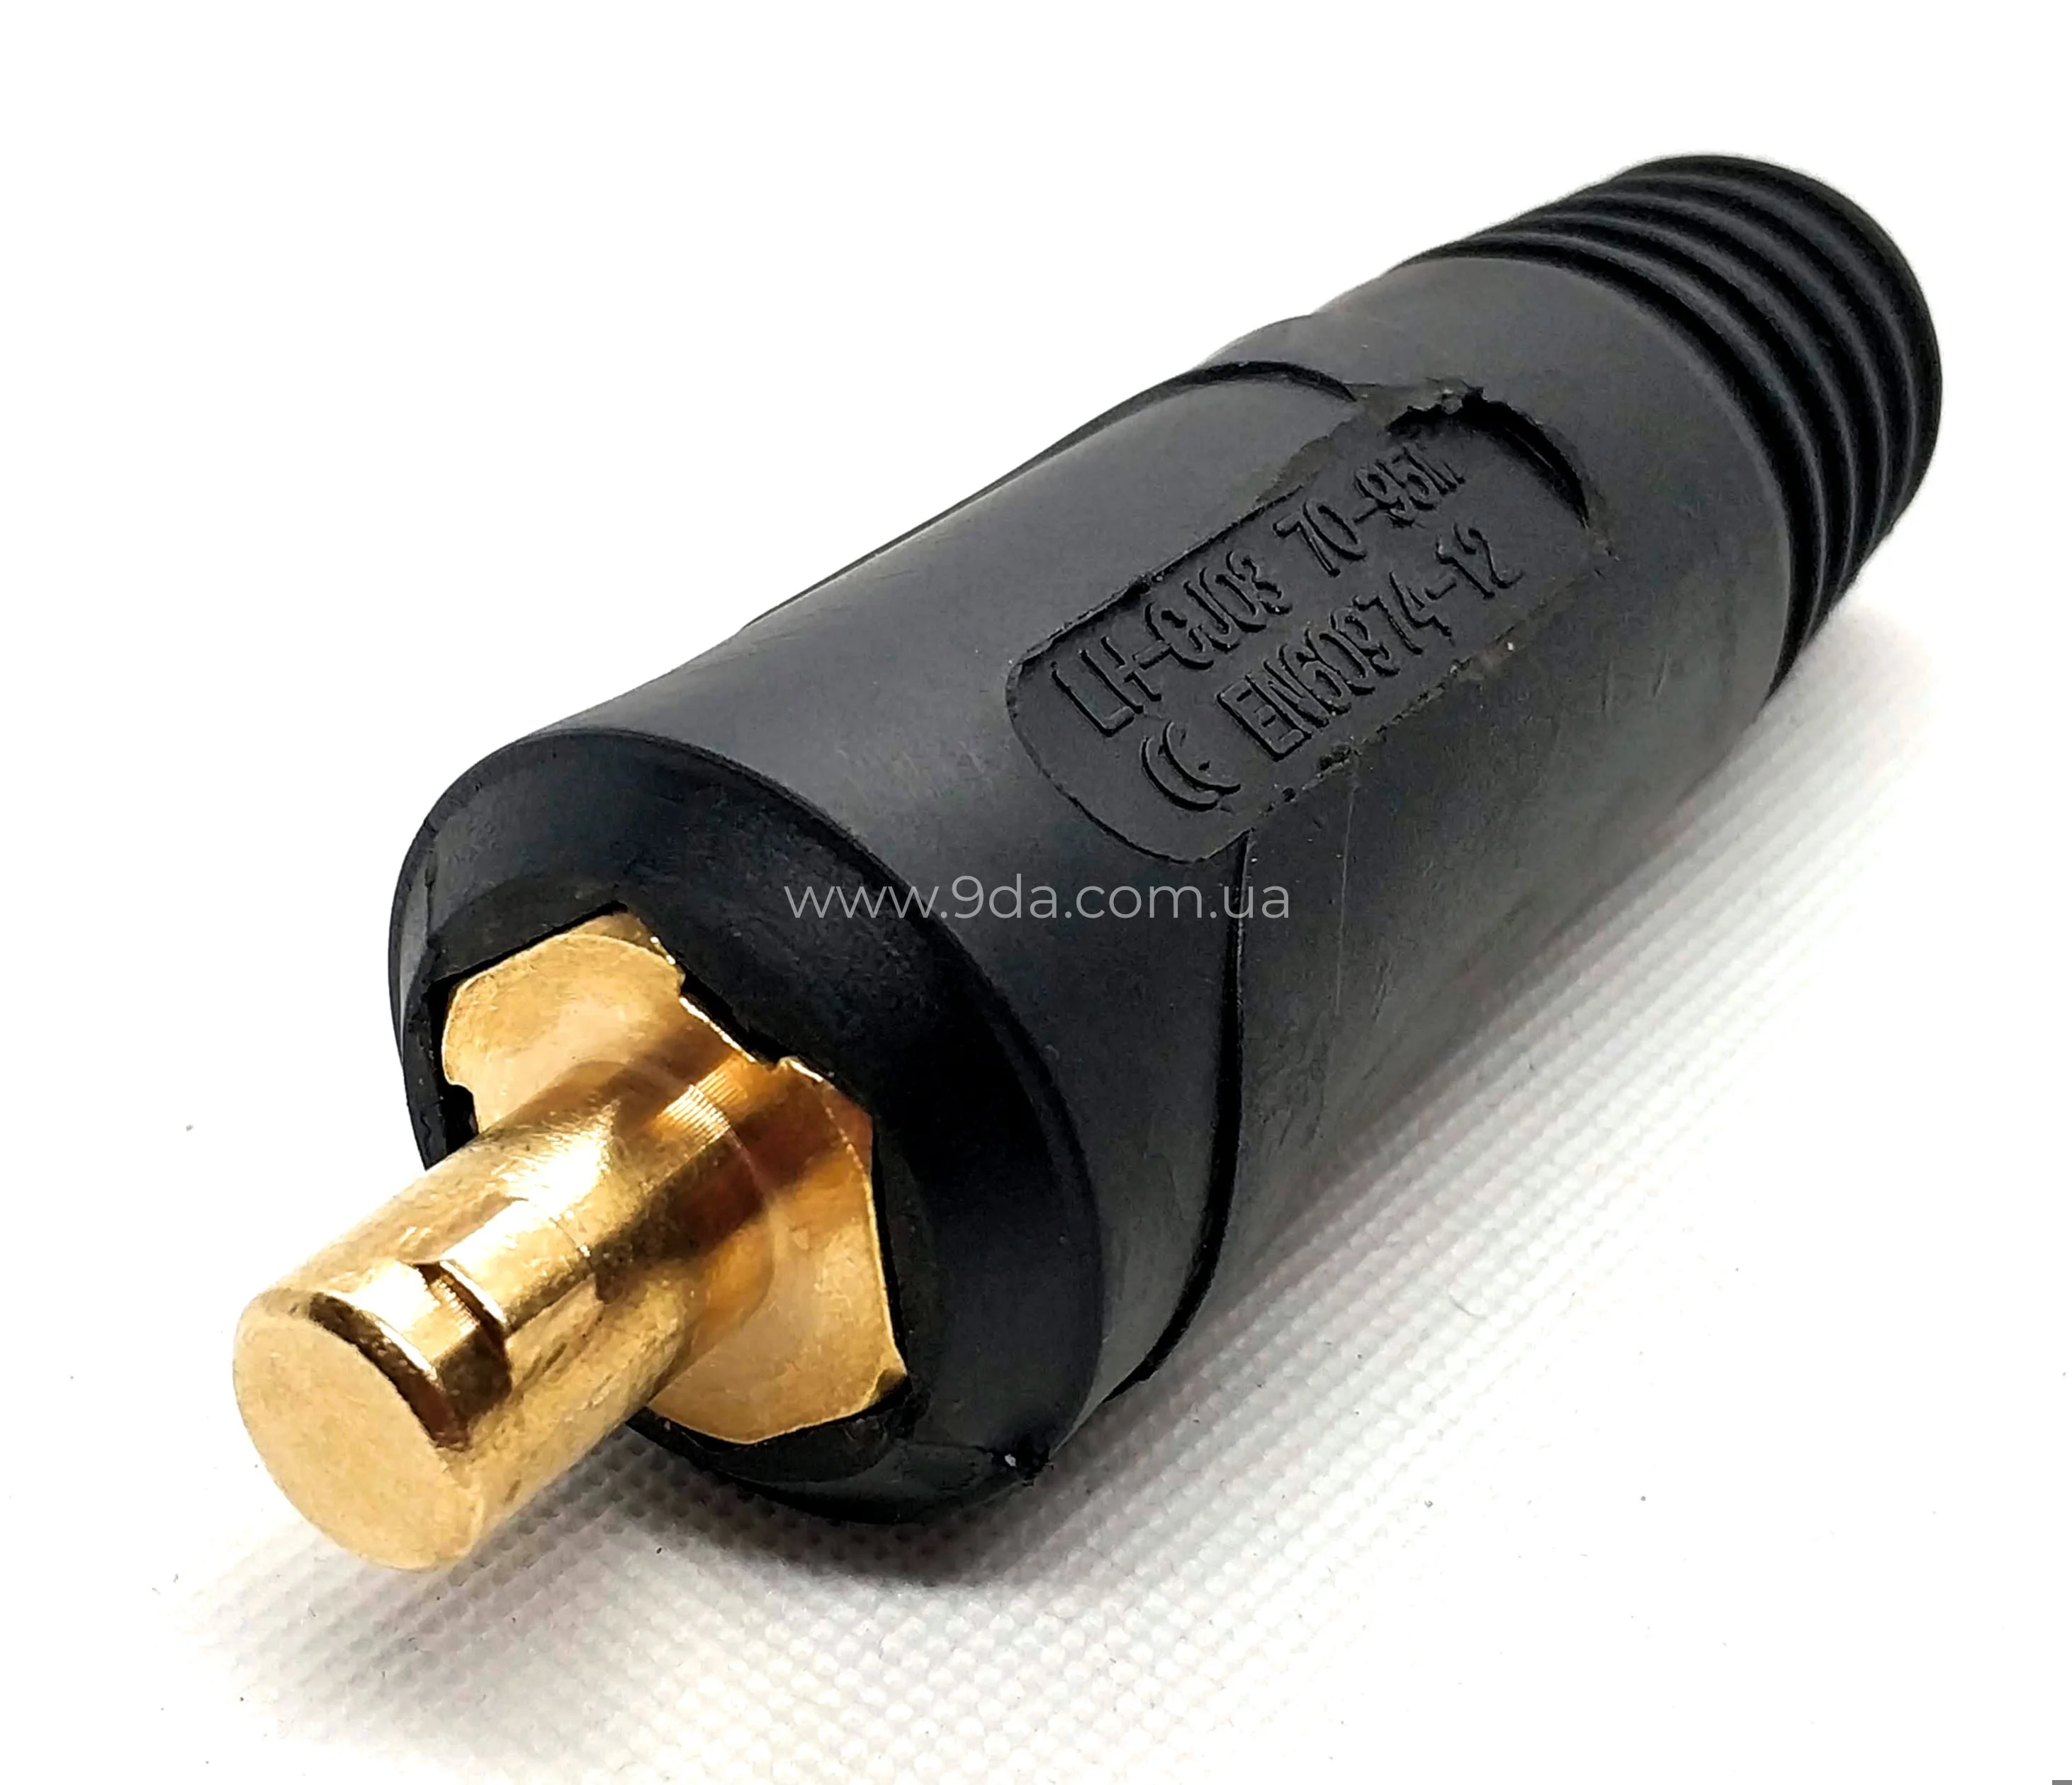 Штекер на кабель, байонентний ABI-CM / BSB 70-95мм, ф12,7мм, 511.0342K, KWeld - 2